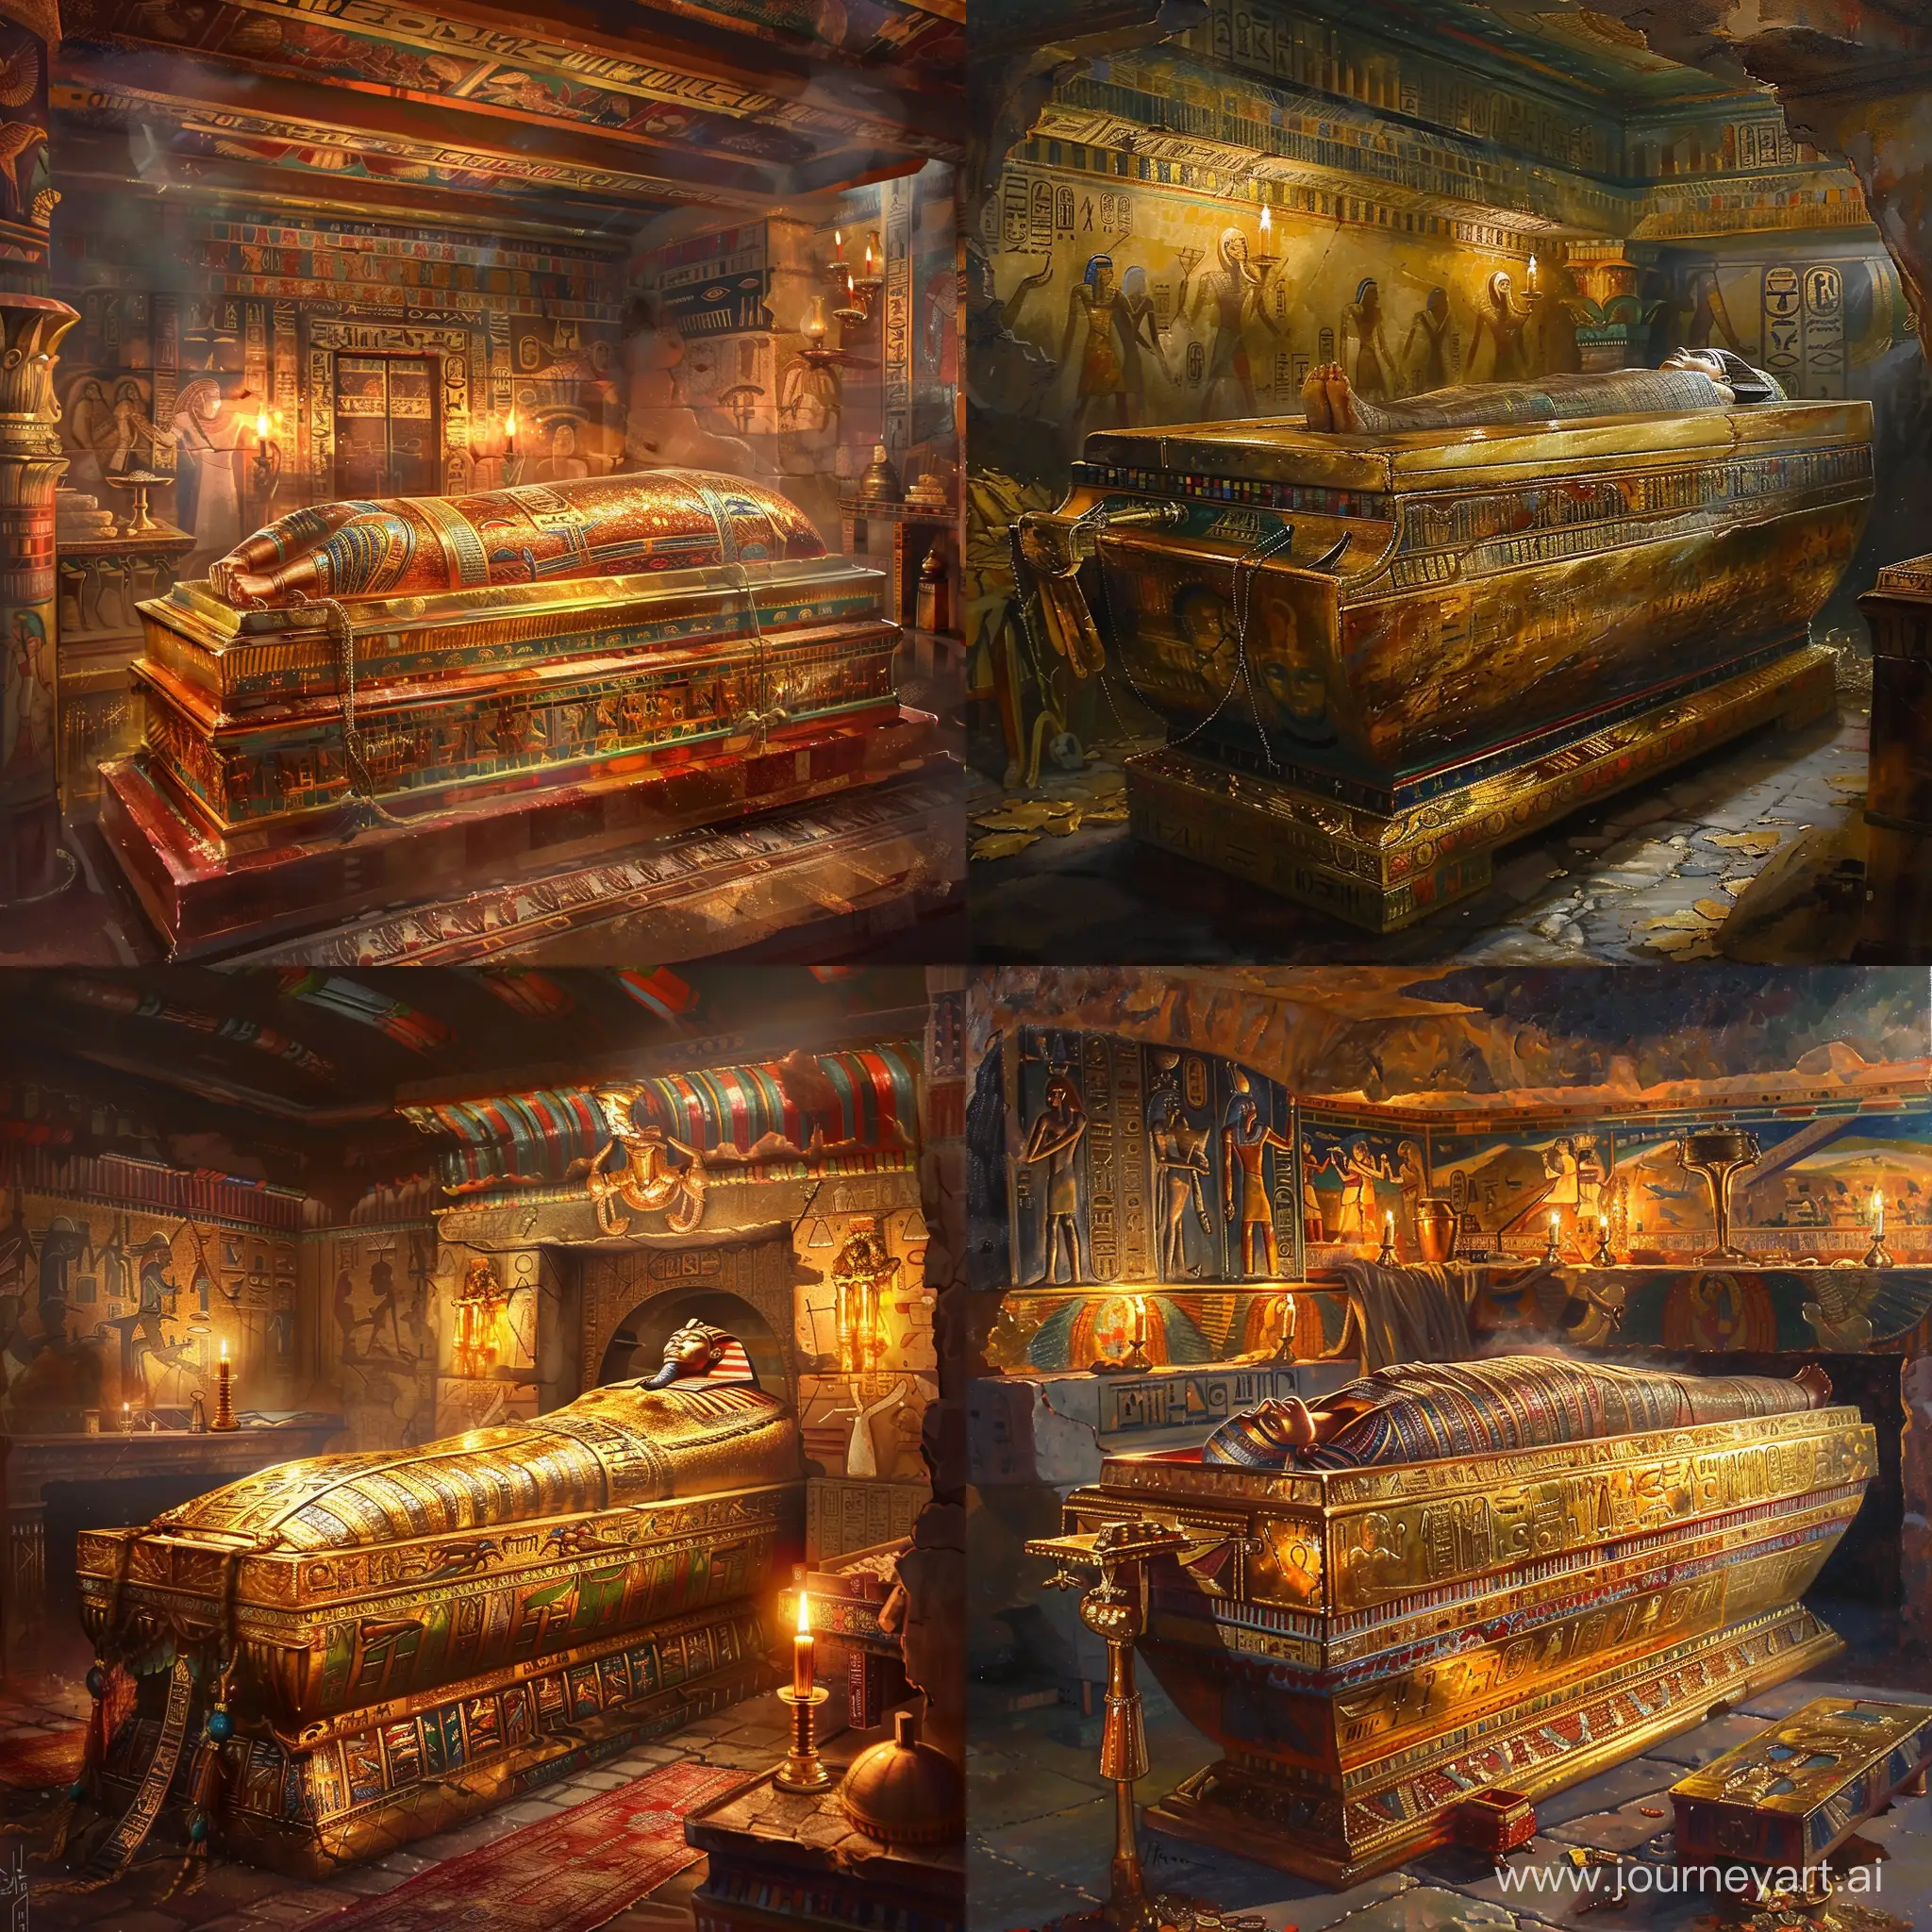 золотой саркофаг с мумией, расписанные стены в гробнице, мерцание масляных ламп, золотые украшения, предметы мебели, Древний Египет, красиво, романтично, картина маслом,